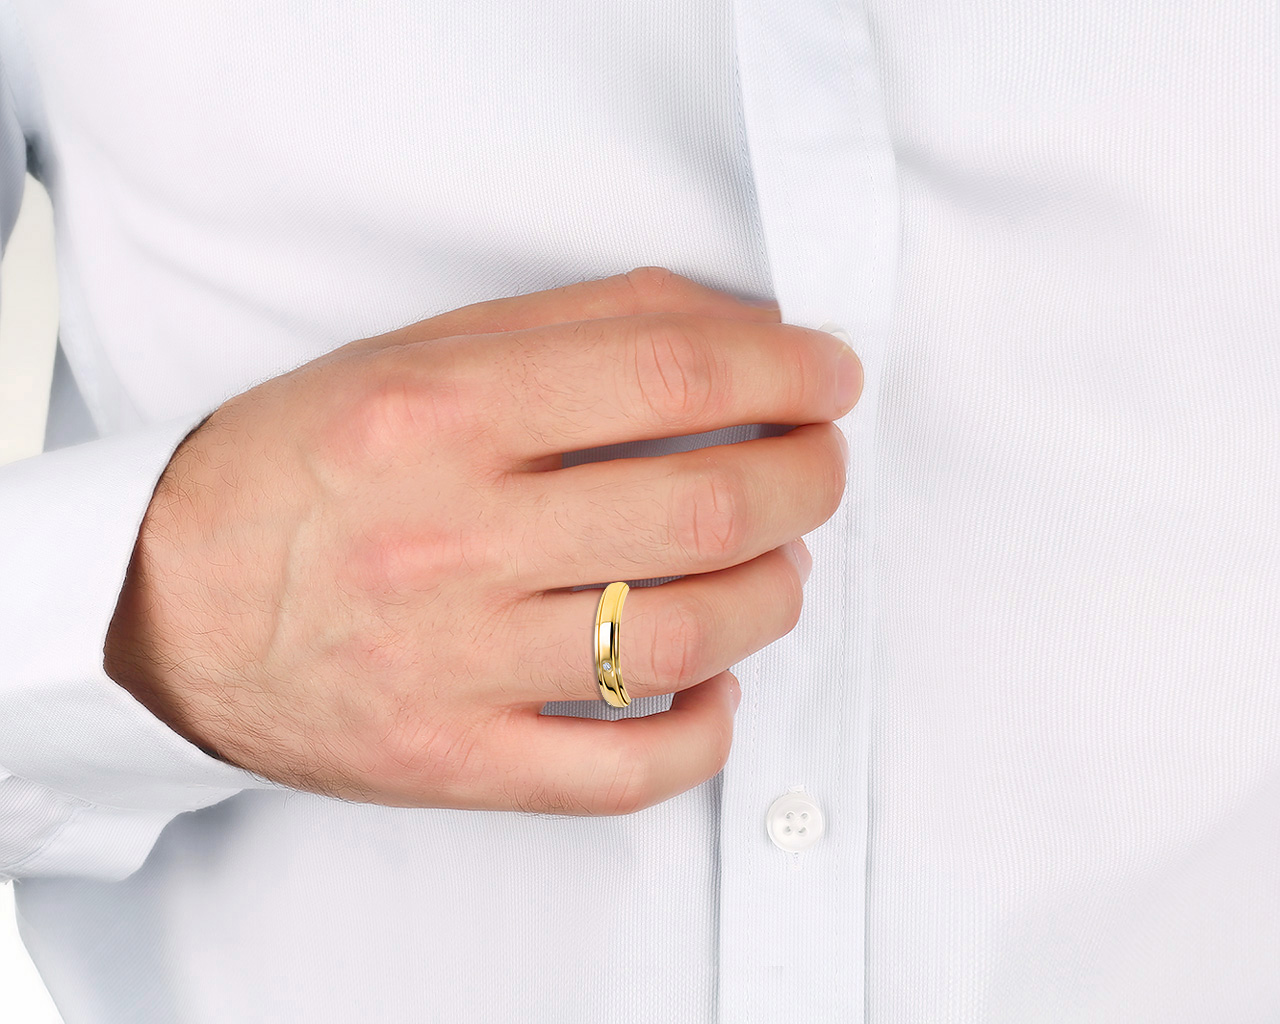 Оригинальное золотое кольцо с бриллиантом 0.02ct Piaget Possession